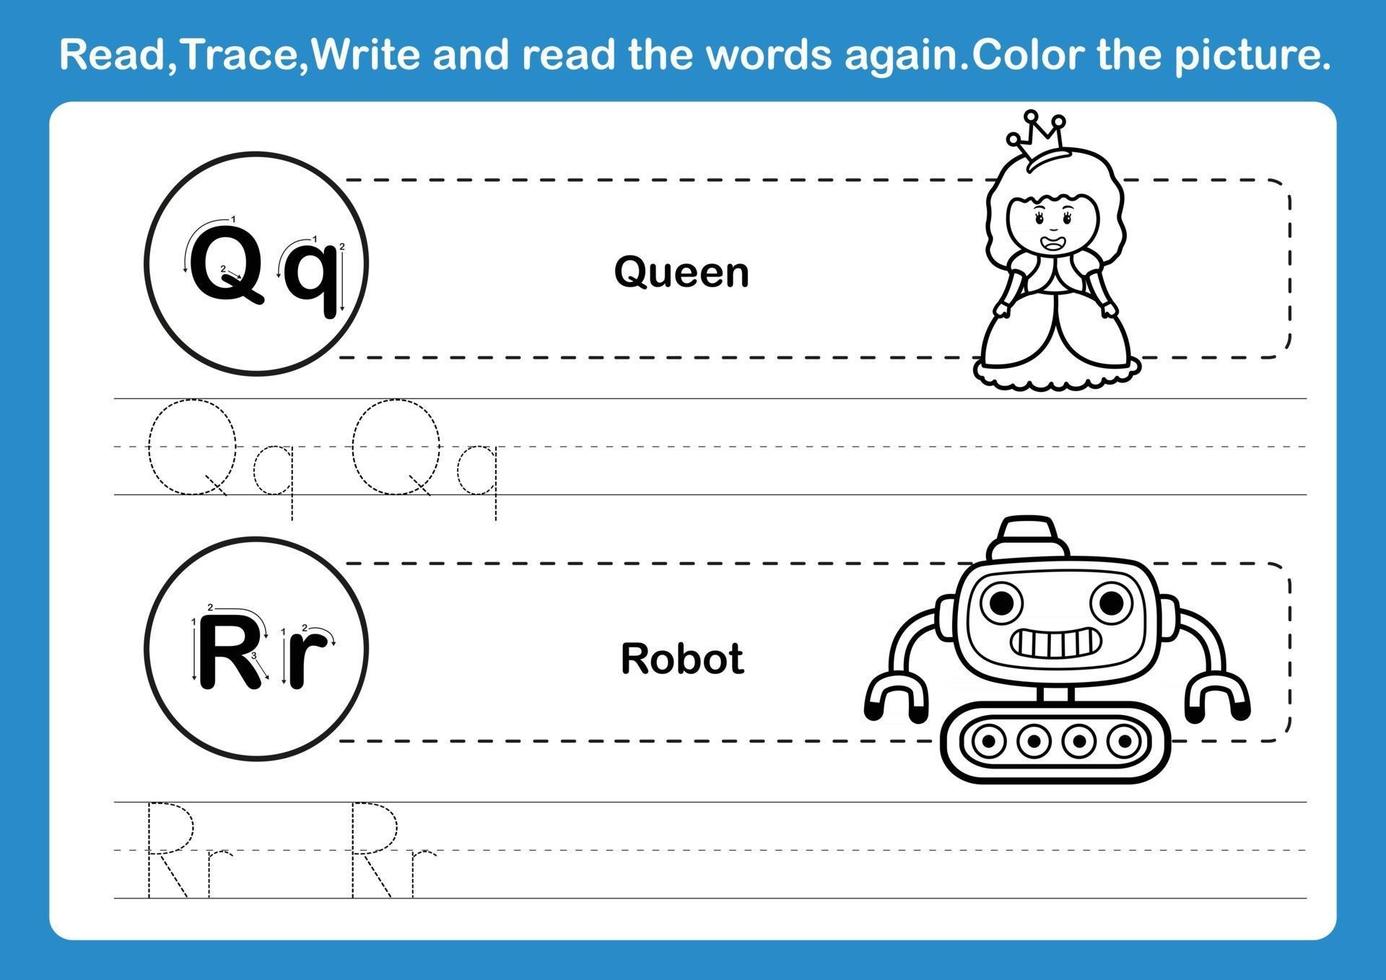 exercice d'alphabet qr avec vocabulaire de dessin animé pour vecteur d'illustration de livre de coloriage